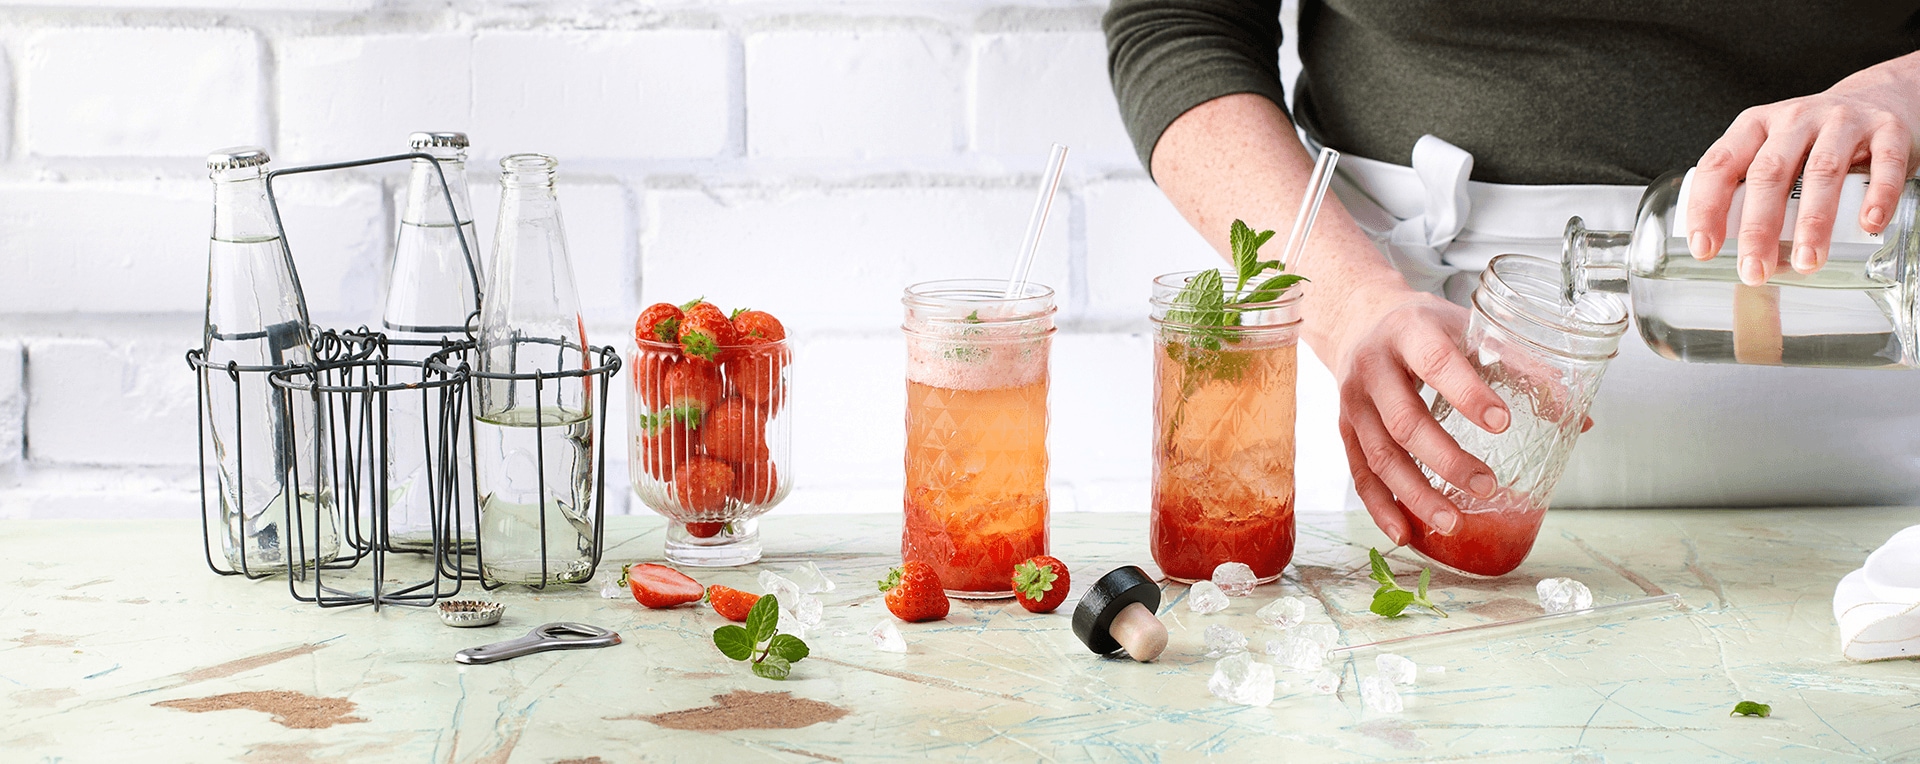 Erdbeer-Minz Gin &amp; Tonic Rezept - REWE.de